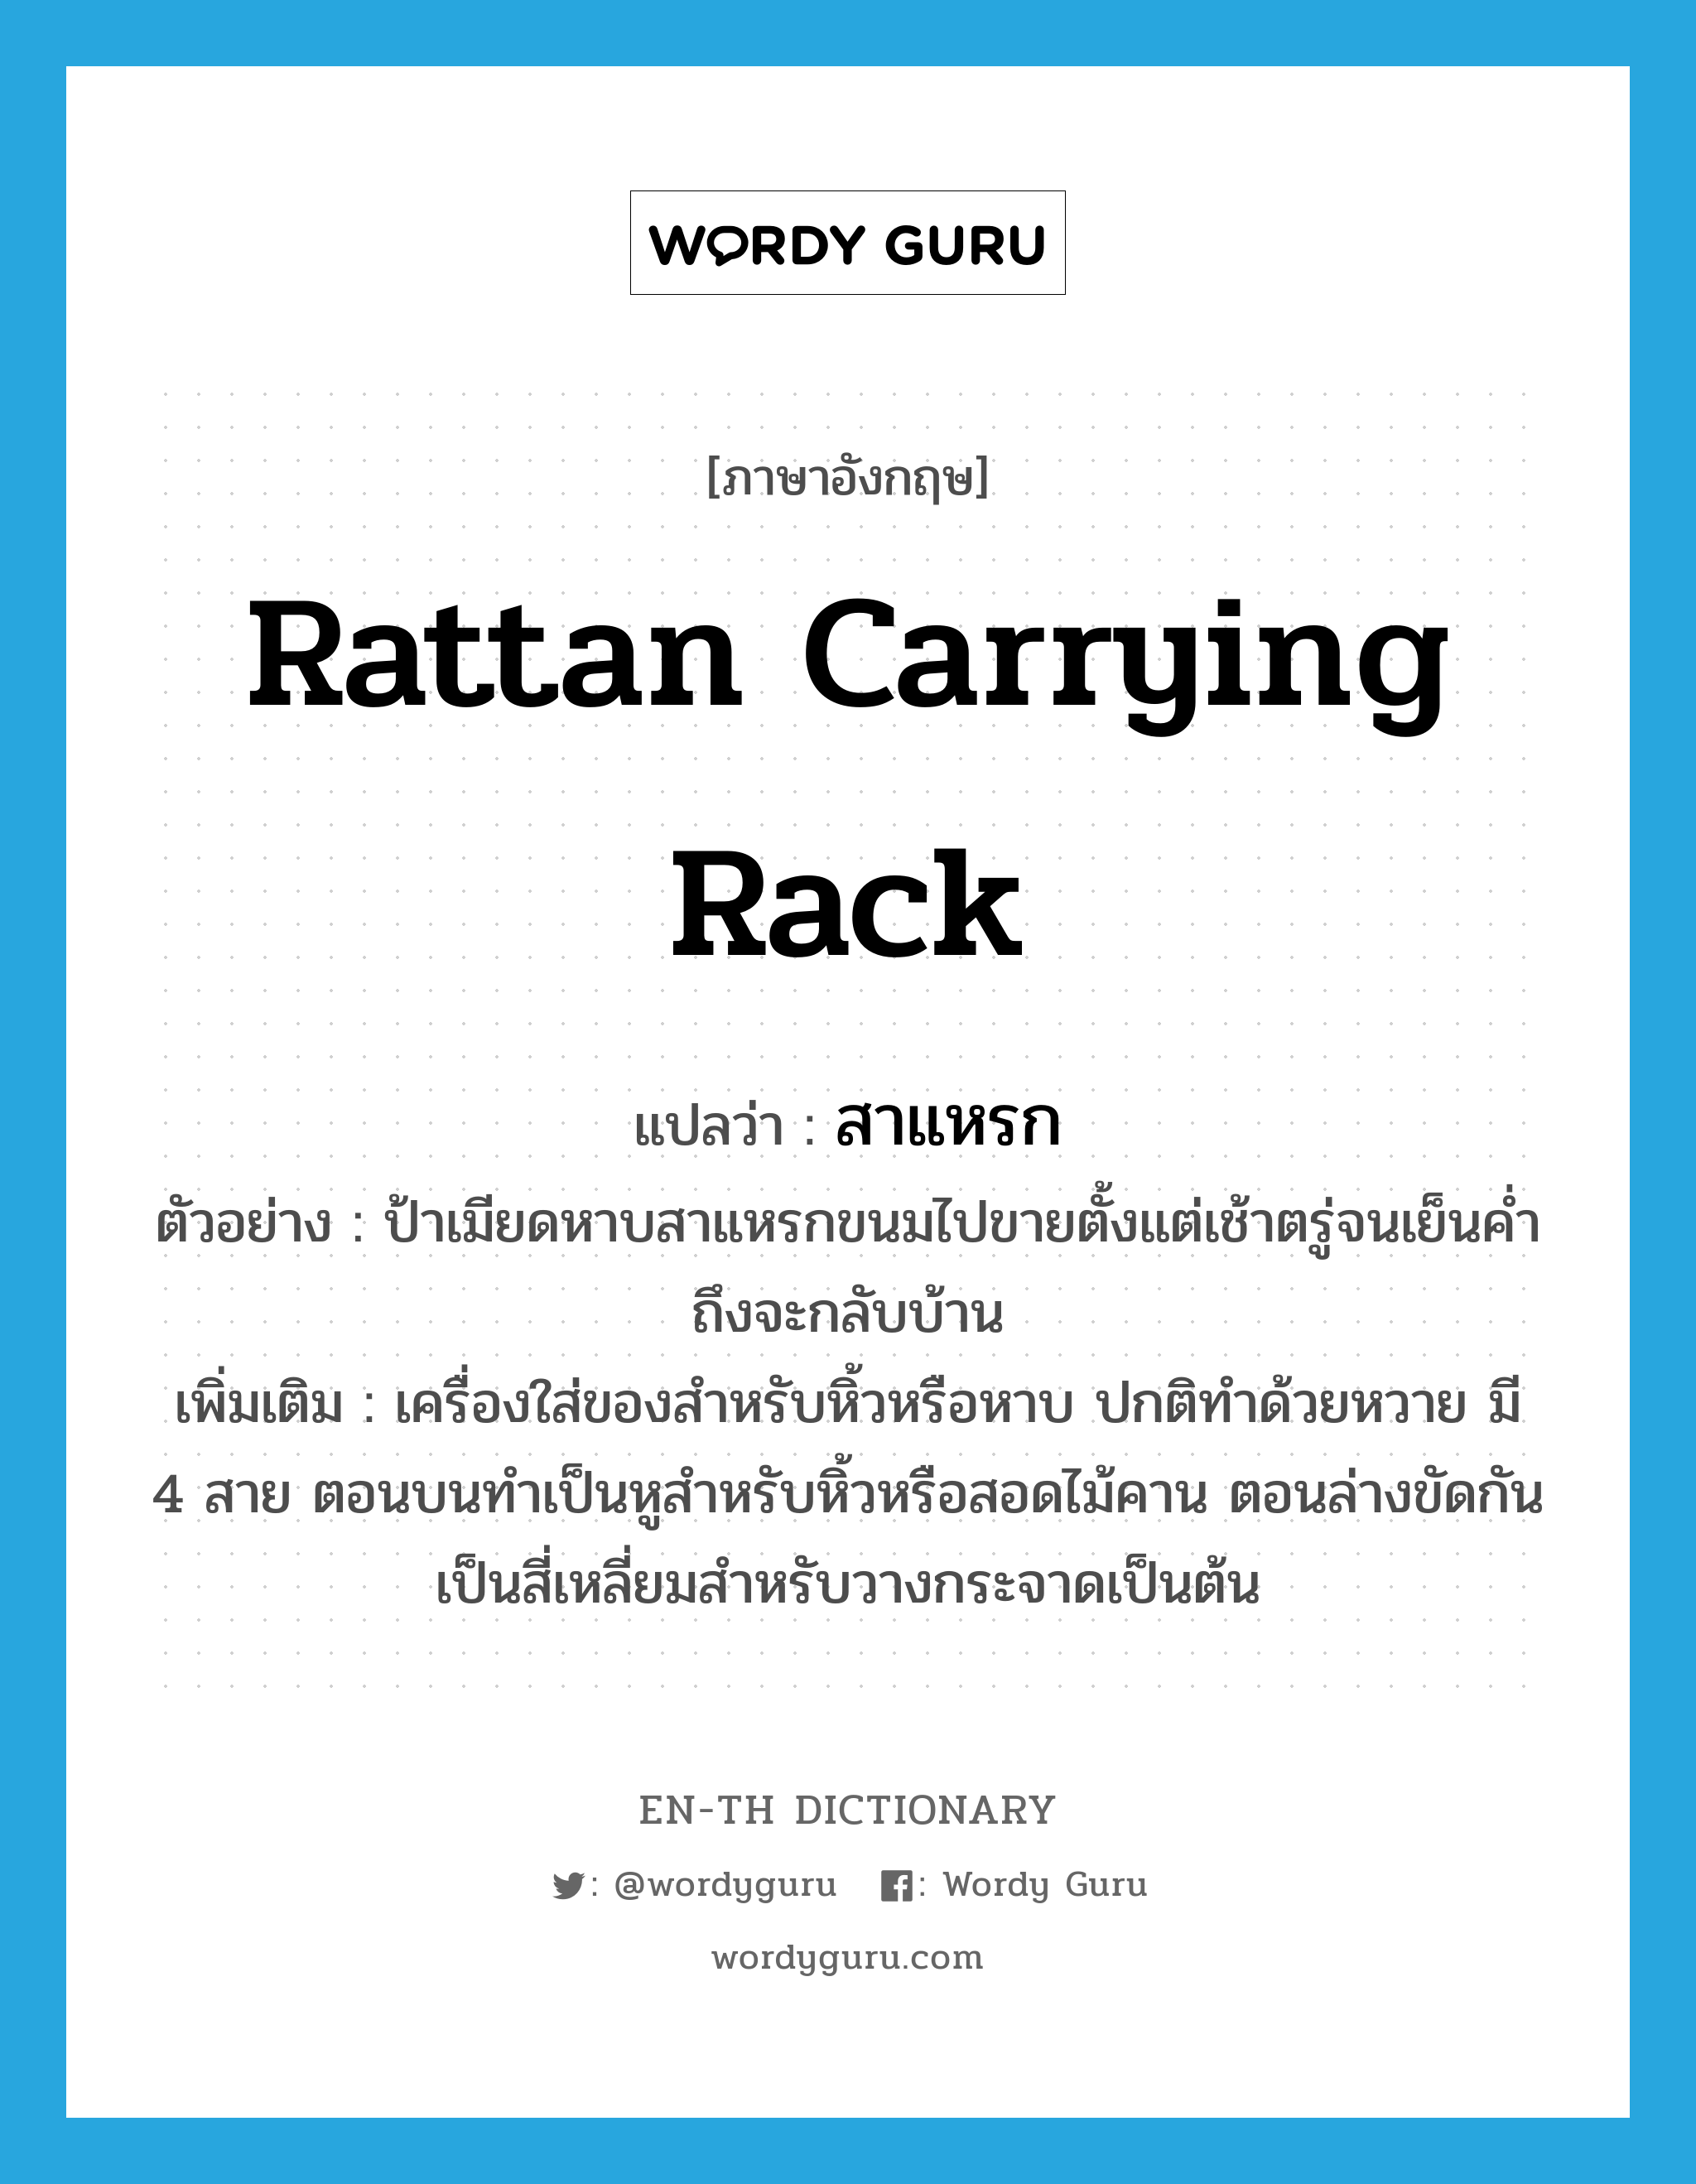 rattan carrying rack แปลว่า?, คำศัพท์ภาษาอังกฤษ rattan carrying rack แปลว่า สาแหรก ประเภท N ตัวอย่าง ป้าเมียดหาบสาแหรกขนมไปขายตั้งแต่เช้าตรู่จนเย็นค่ำถึงจะกลับบ้าน เพิ่มเติม เครื่องใส่ของสำหรับหิ้วหรือหาบ ปกติทำด้วยหวาย มี 4 สาย ตอนบนทำเป็นหูสำหรับหิ้วหรือสอดไม้คาน ตอนล่างขัดกันเป็นสี่เหลี่ยมสำหรับวางกระจาดเป็นต้น หมวด N